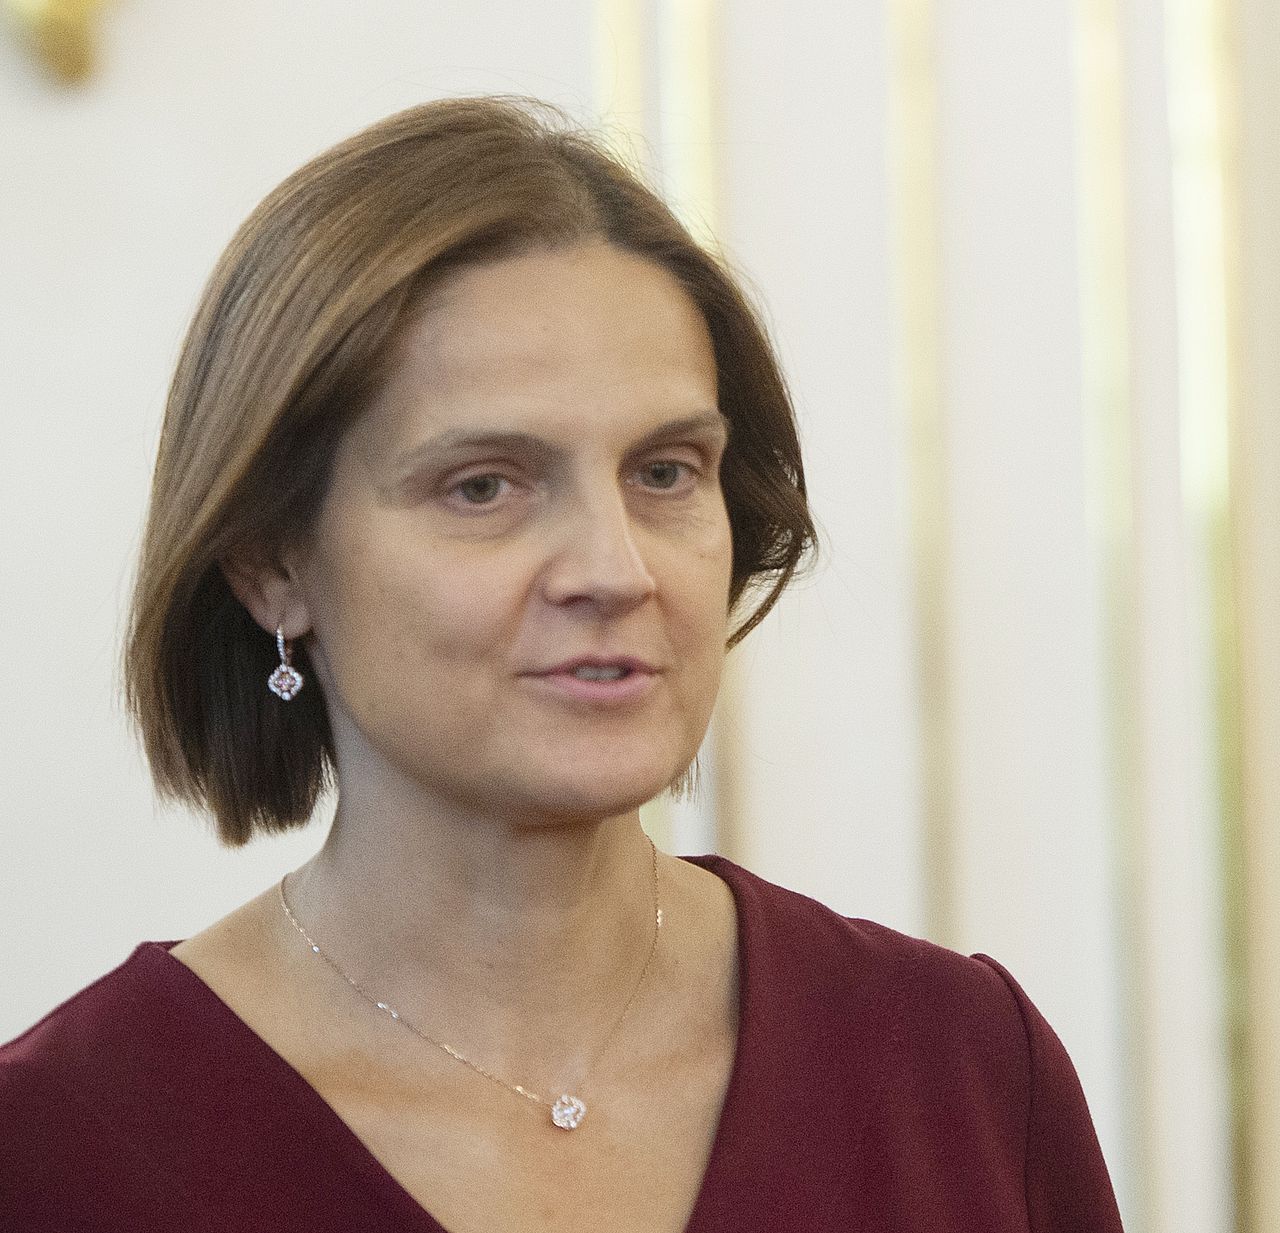 
Poslankyňa Mária Kolíková vyzvala generálneho prokurátora Maroša Žilinku, aby odstúpil z funkcie